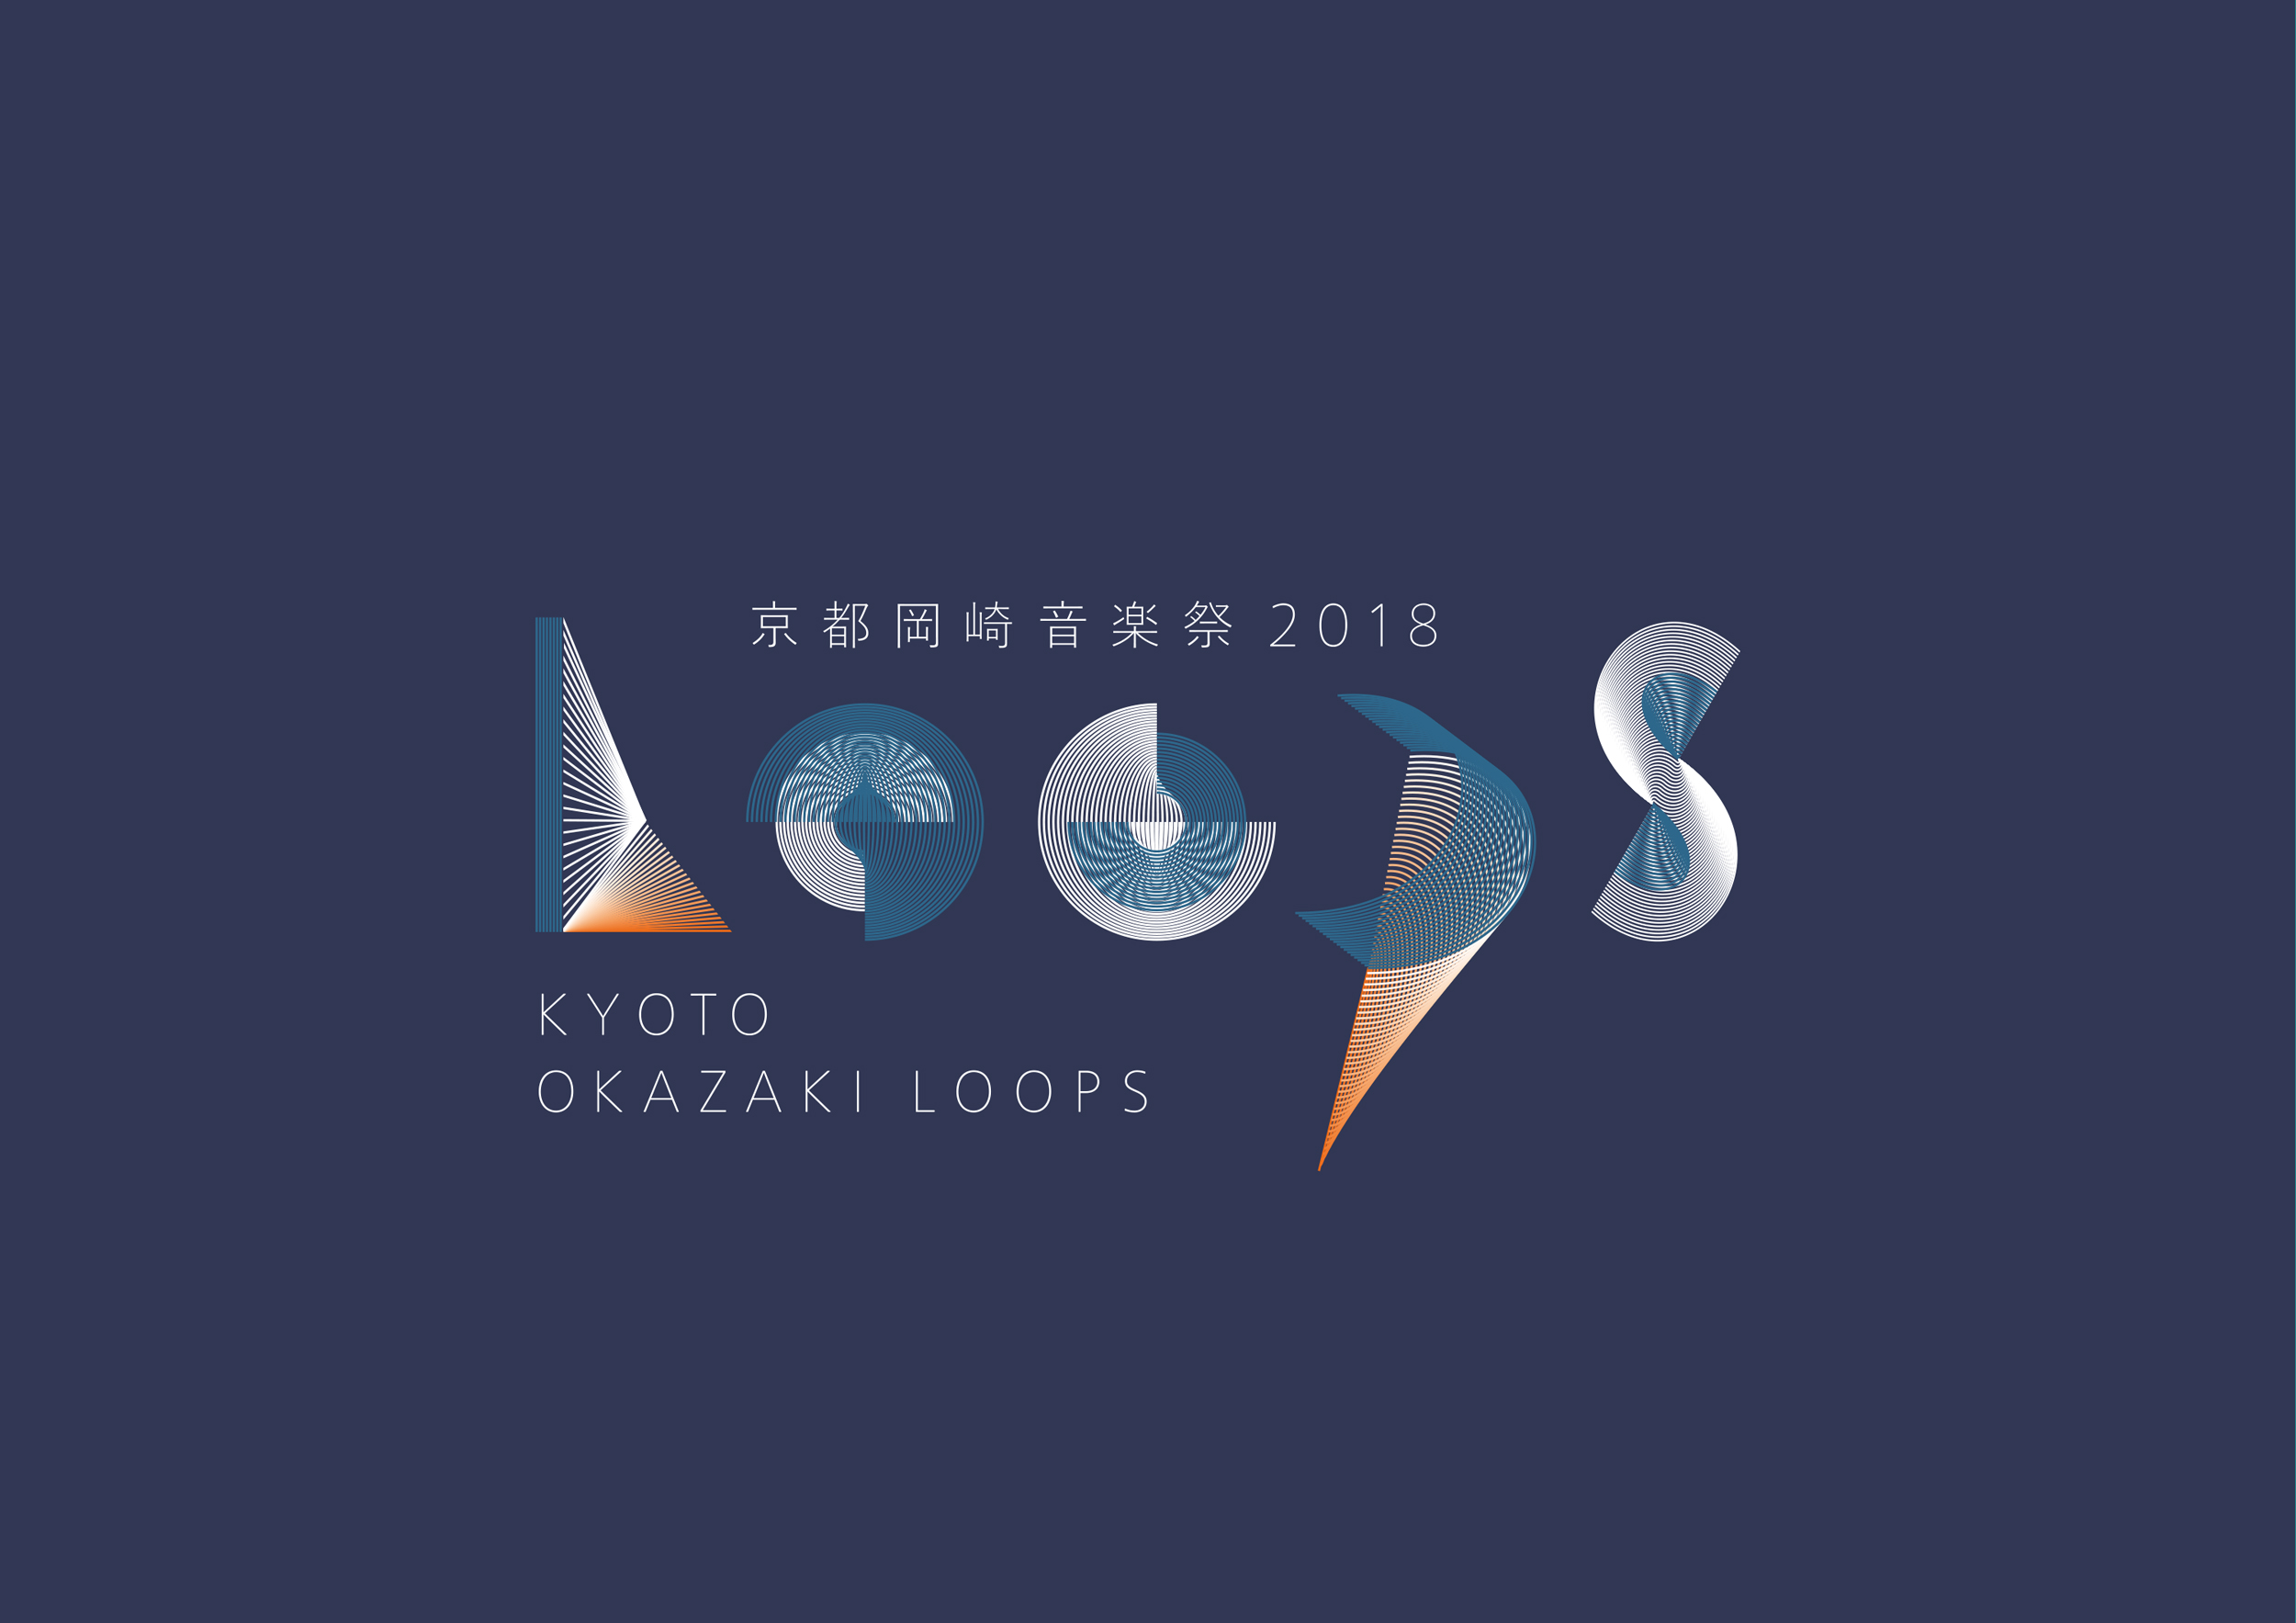 loops_logo-2018.jpg